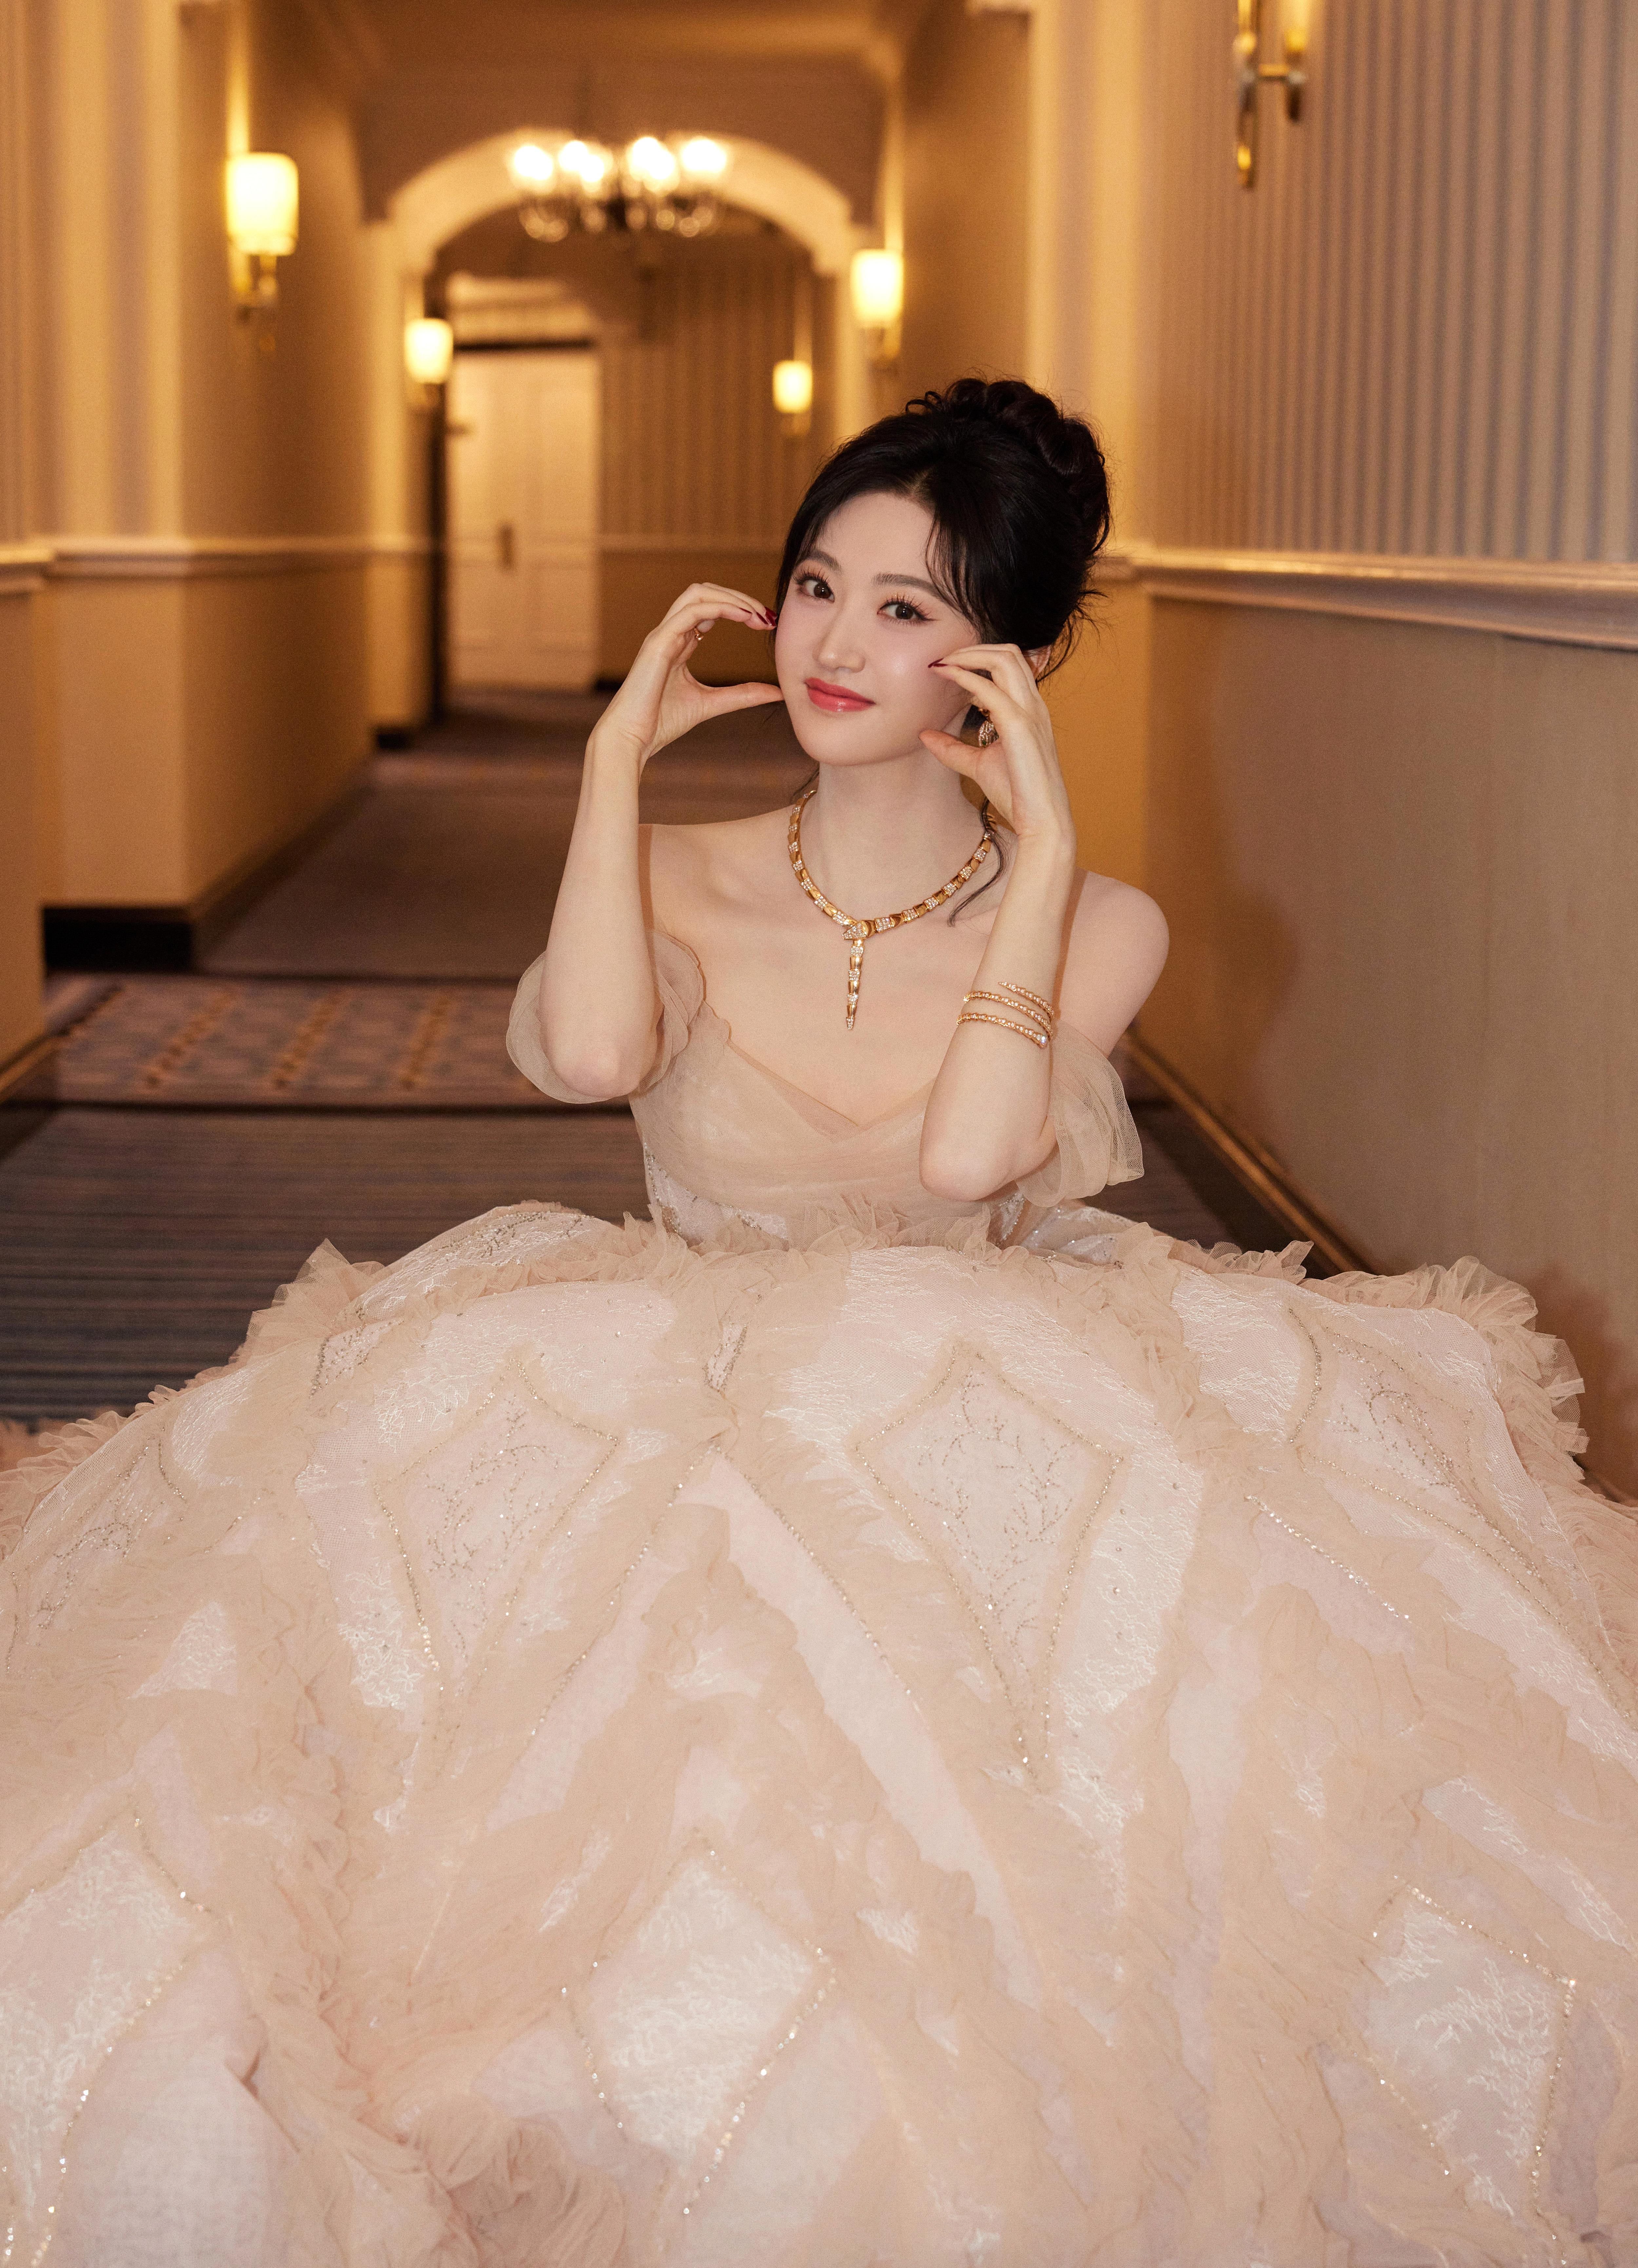 甜美公主范 景甜穿白色蓬蓬裙清新怡人,1 (8)